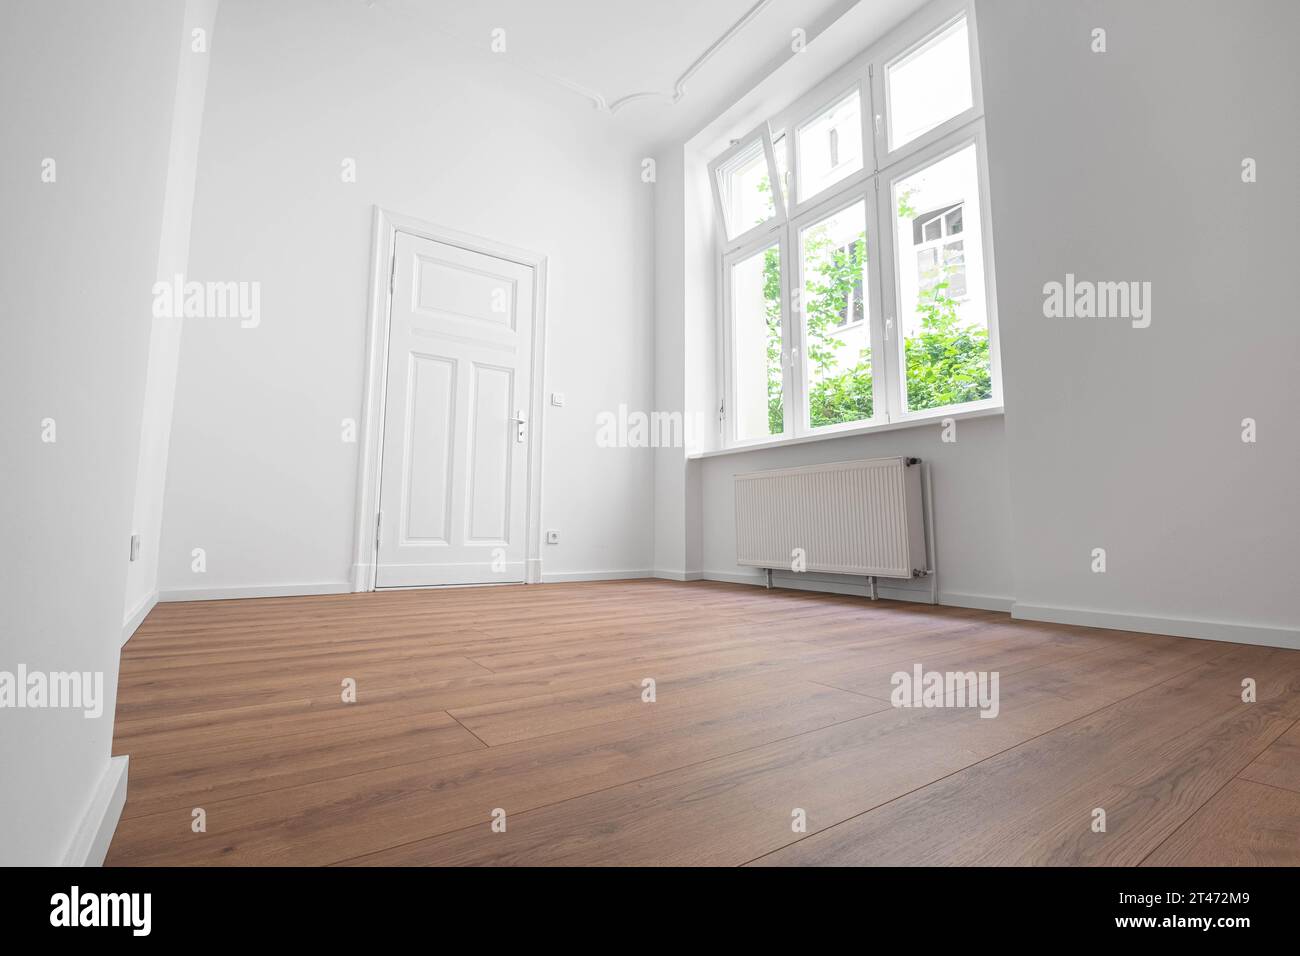 Leeres Apartmentzimmer, Fenster und flache Tür, flacher Blick Stockfoto